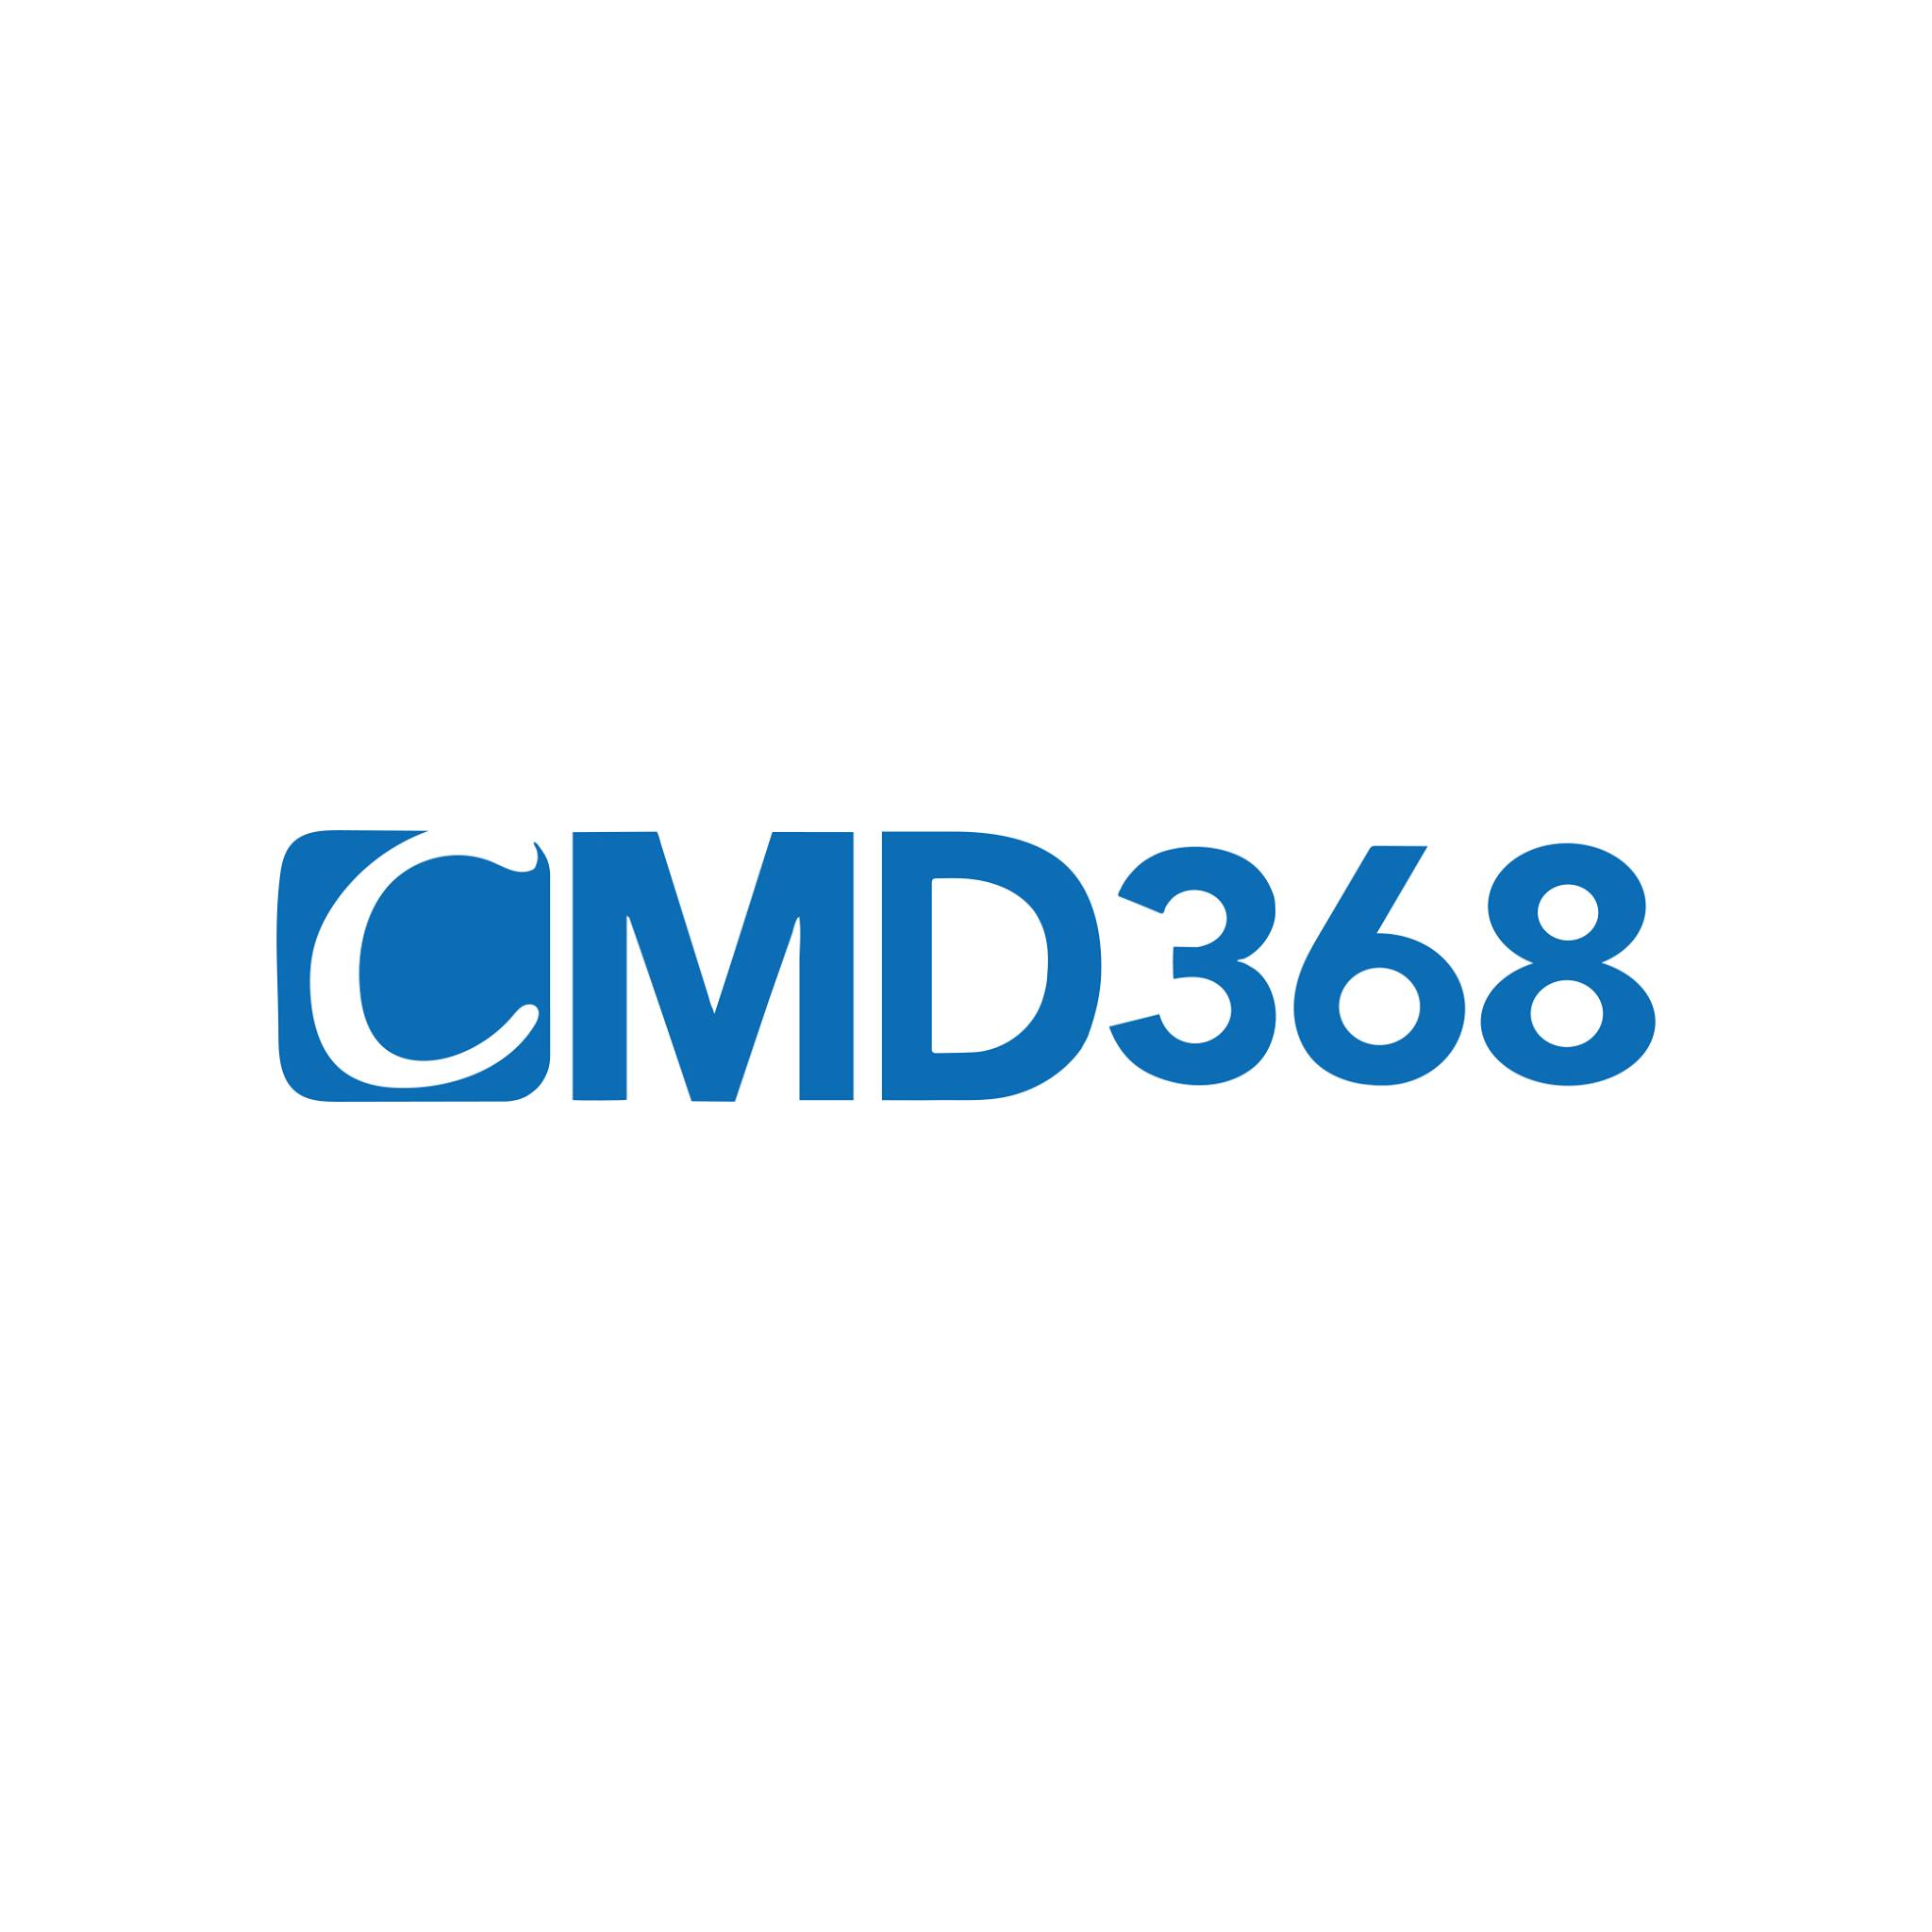 CMD368 - Chơi cược an toàn, kiếm tiền dễ dàng